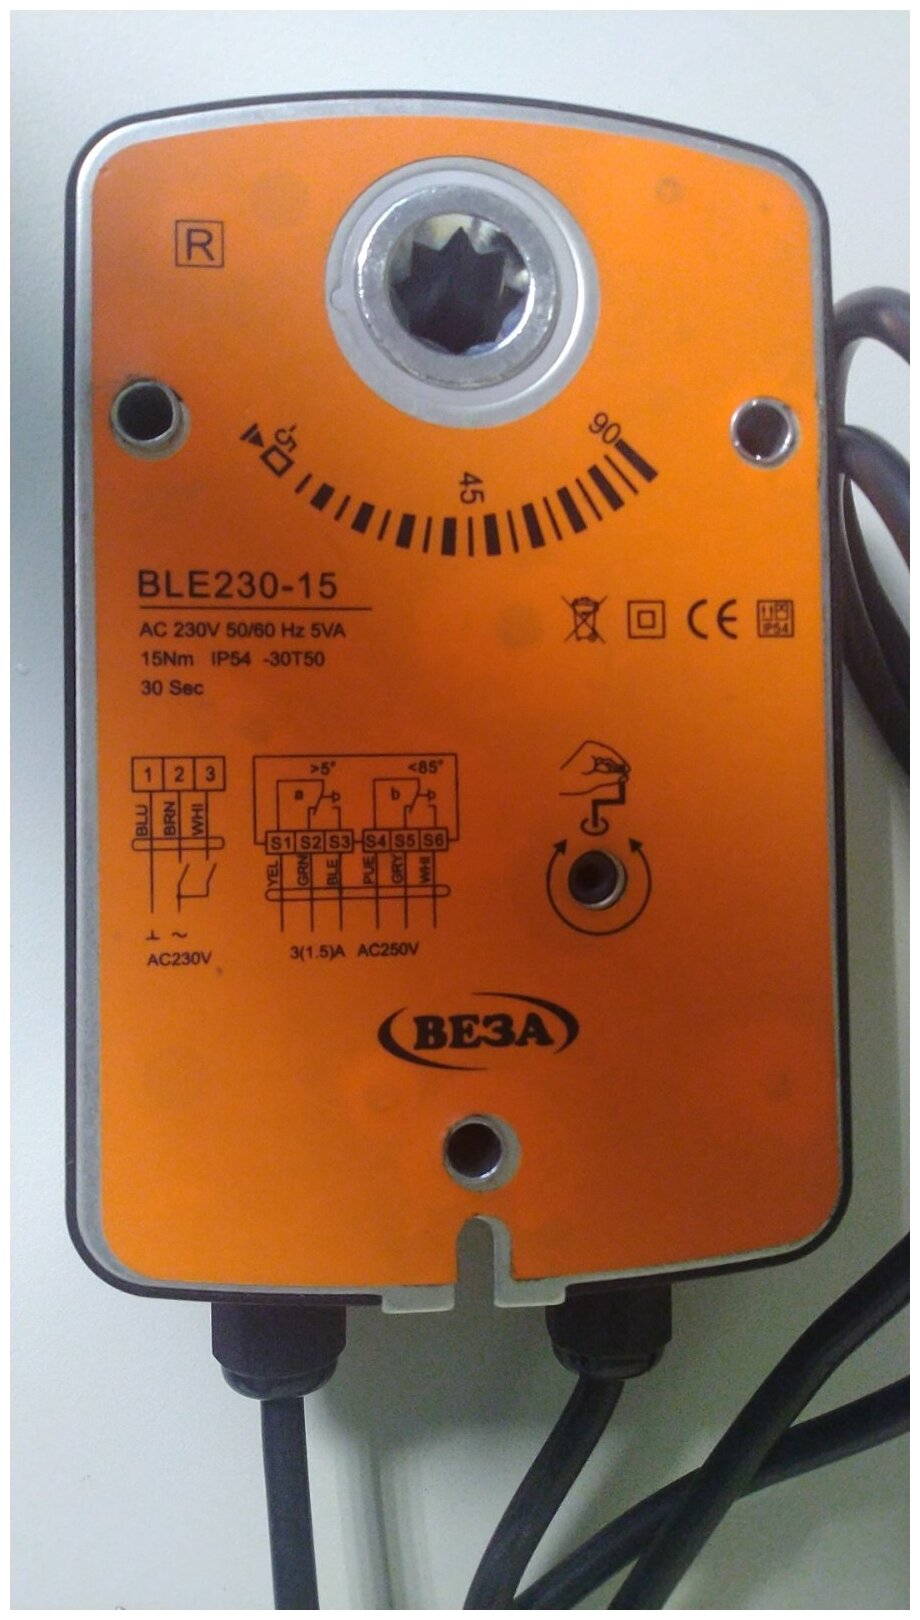 Электропривод веза BLE230-15 поворотный (15 Nm 5VA 230V 50/60Hz) - фотография № 4